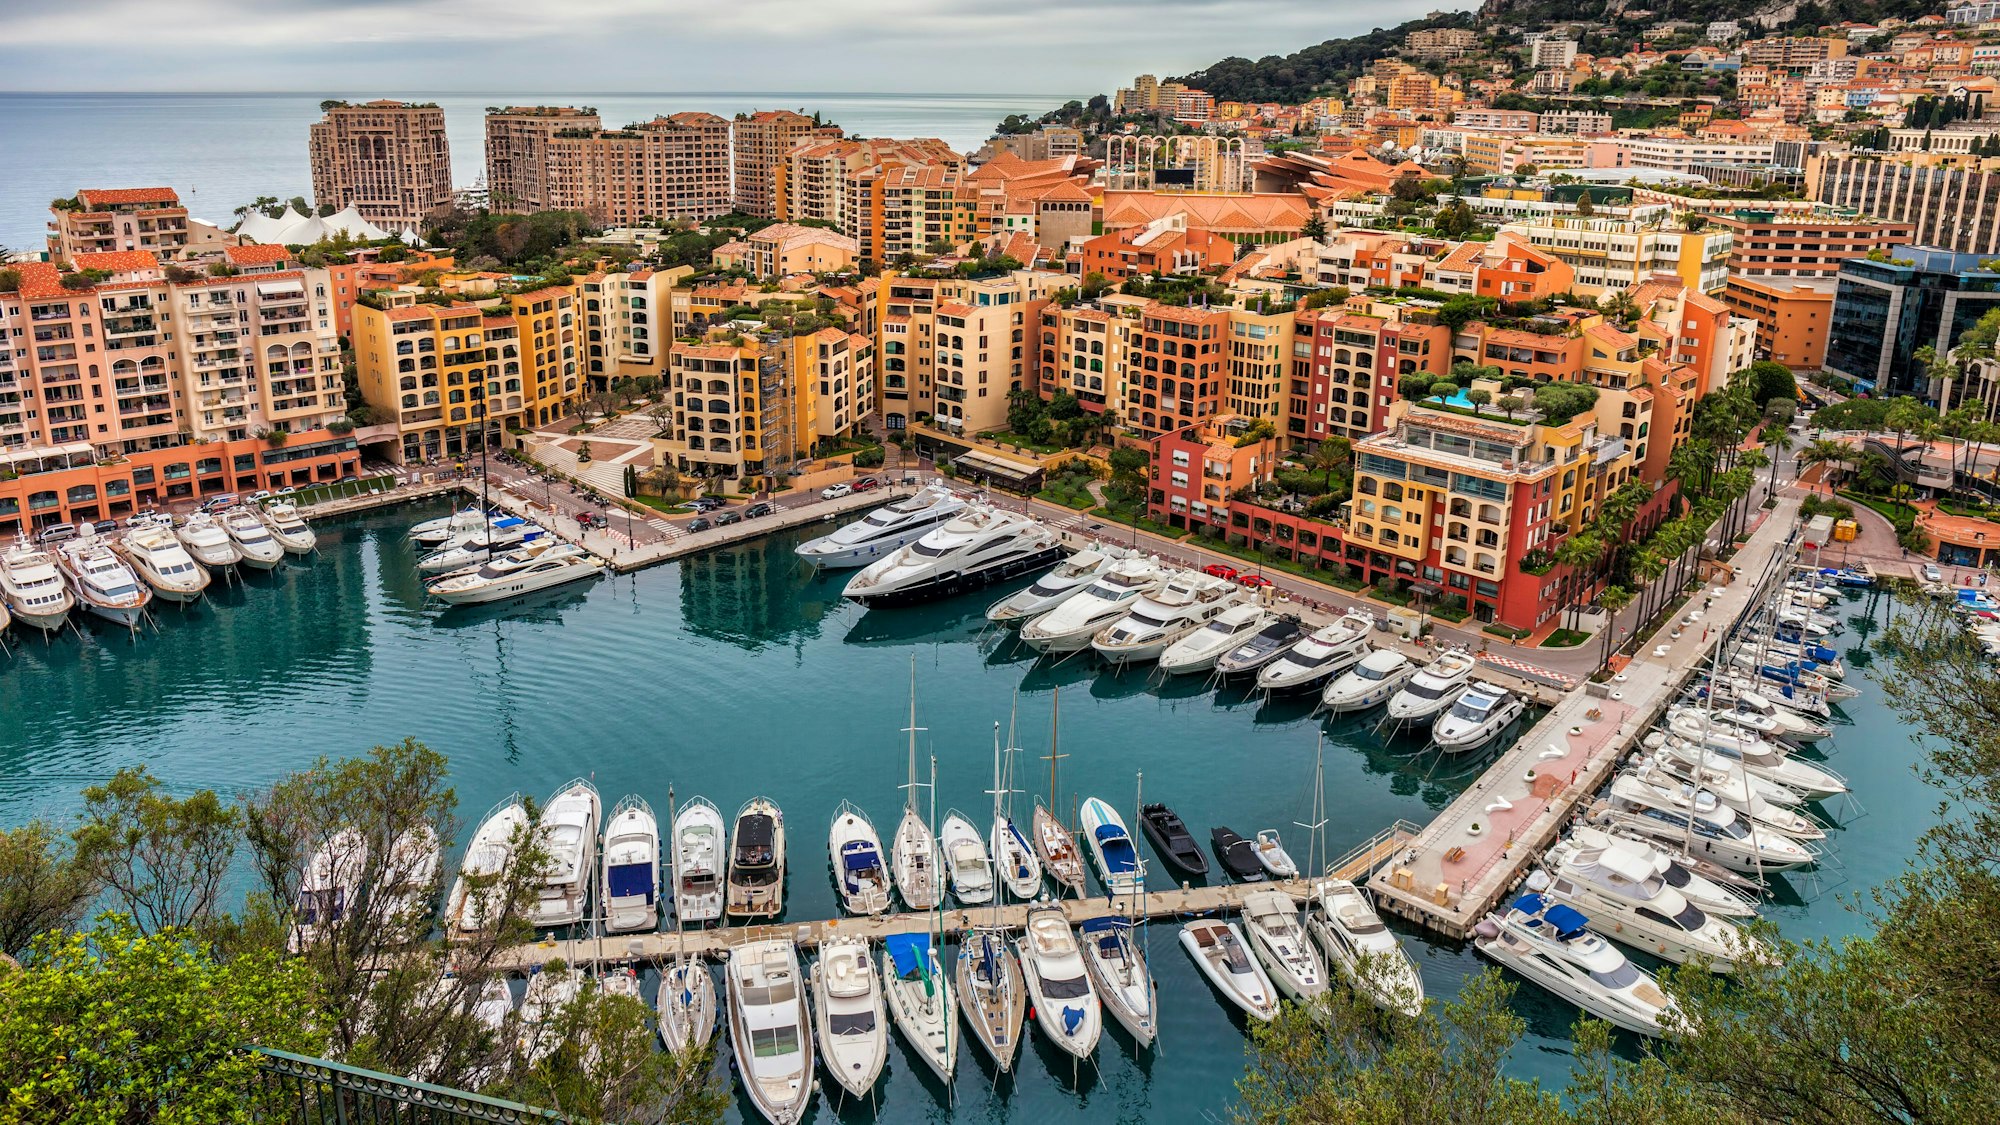 Blick auf den Yachthafen von Monte-Carlo, Monaco.